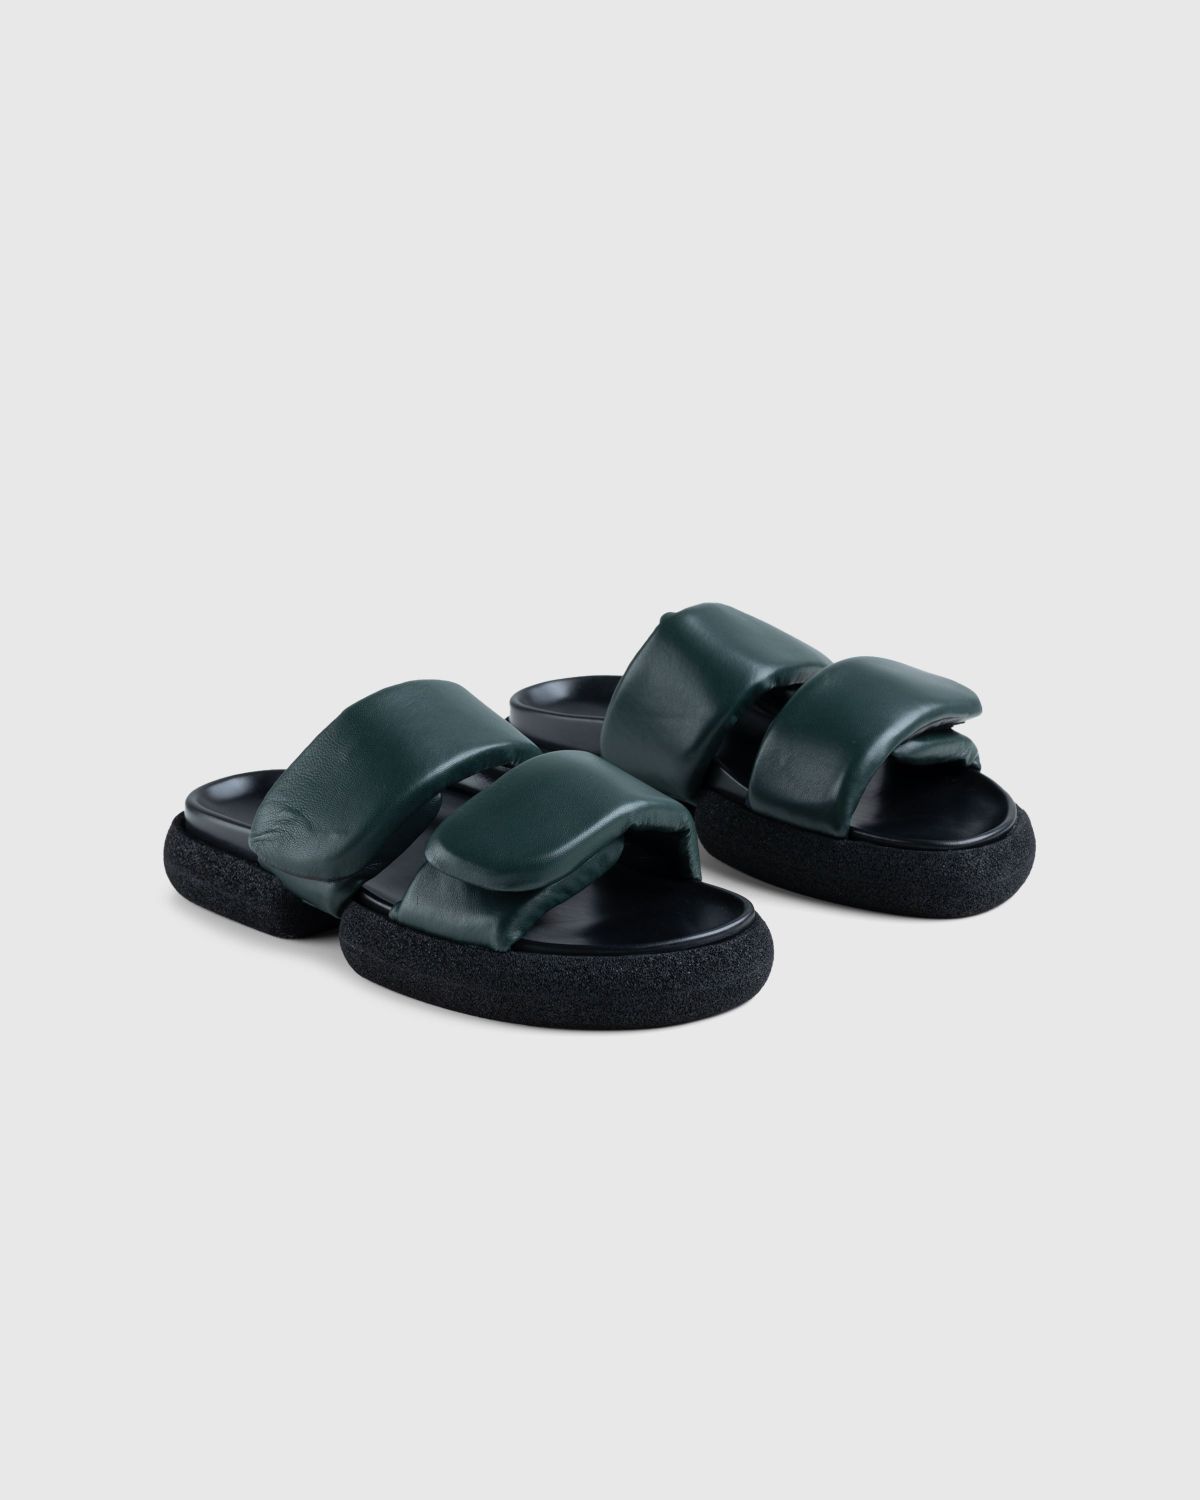 Dries van Noten – Leather Platform Sandals Green - Sandals - Green - Image 3